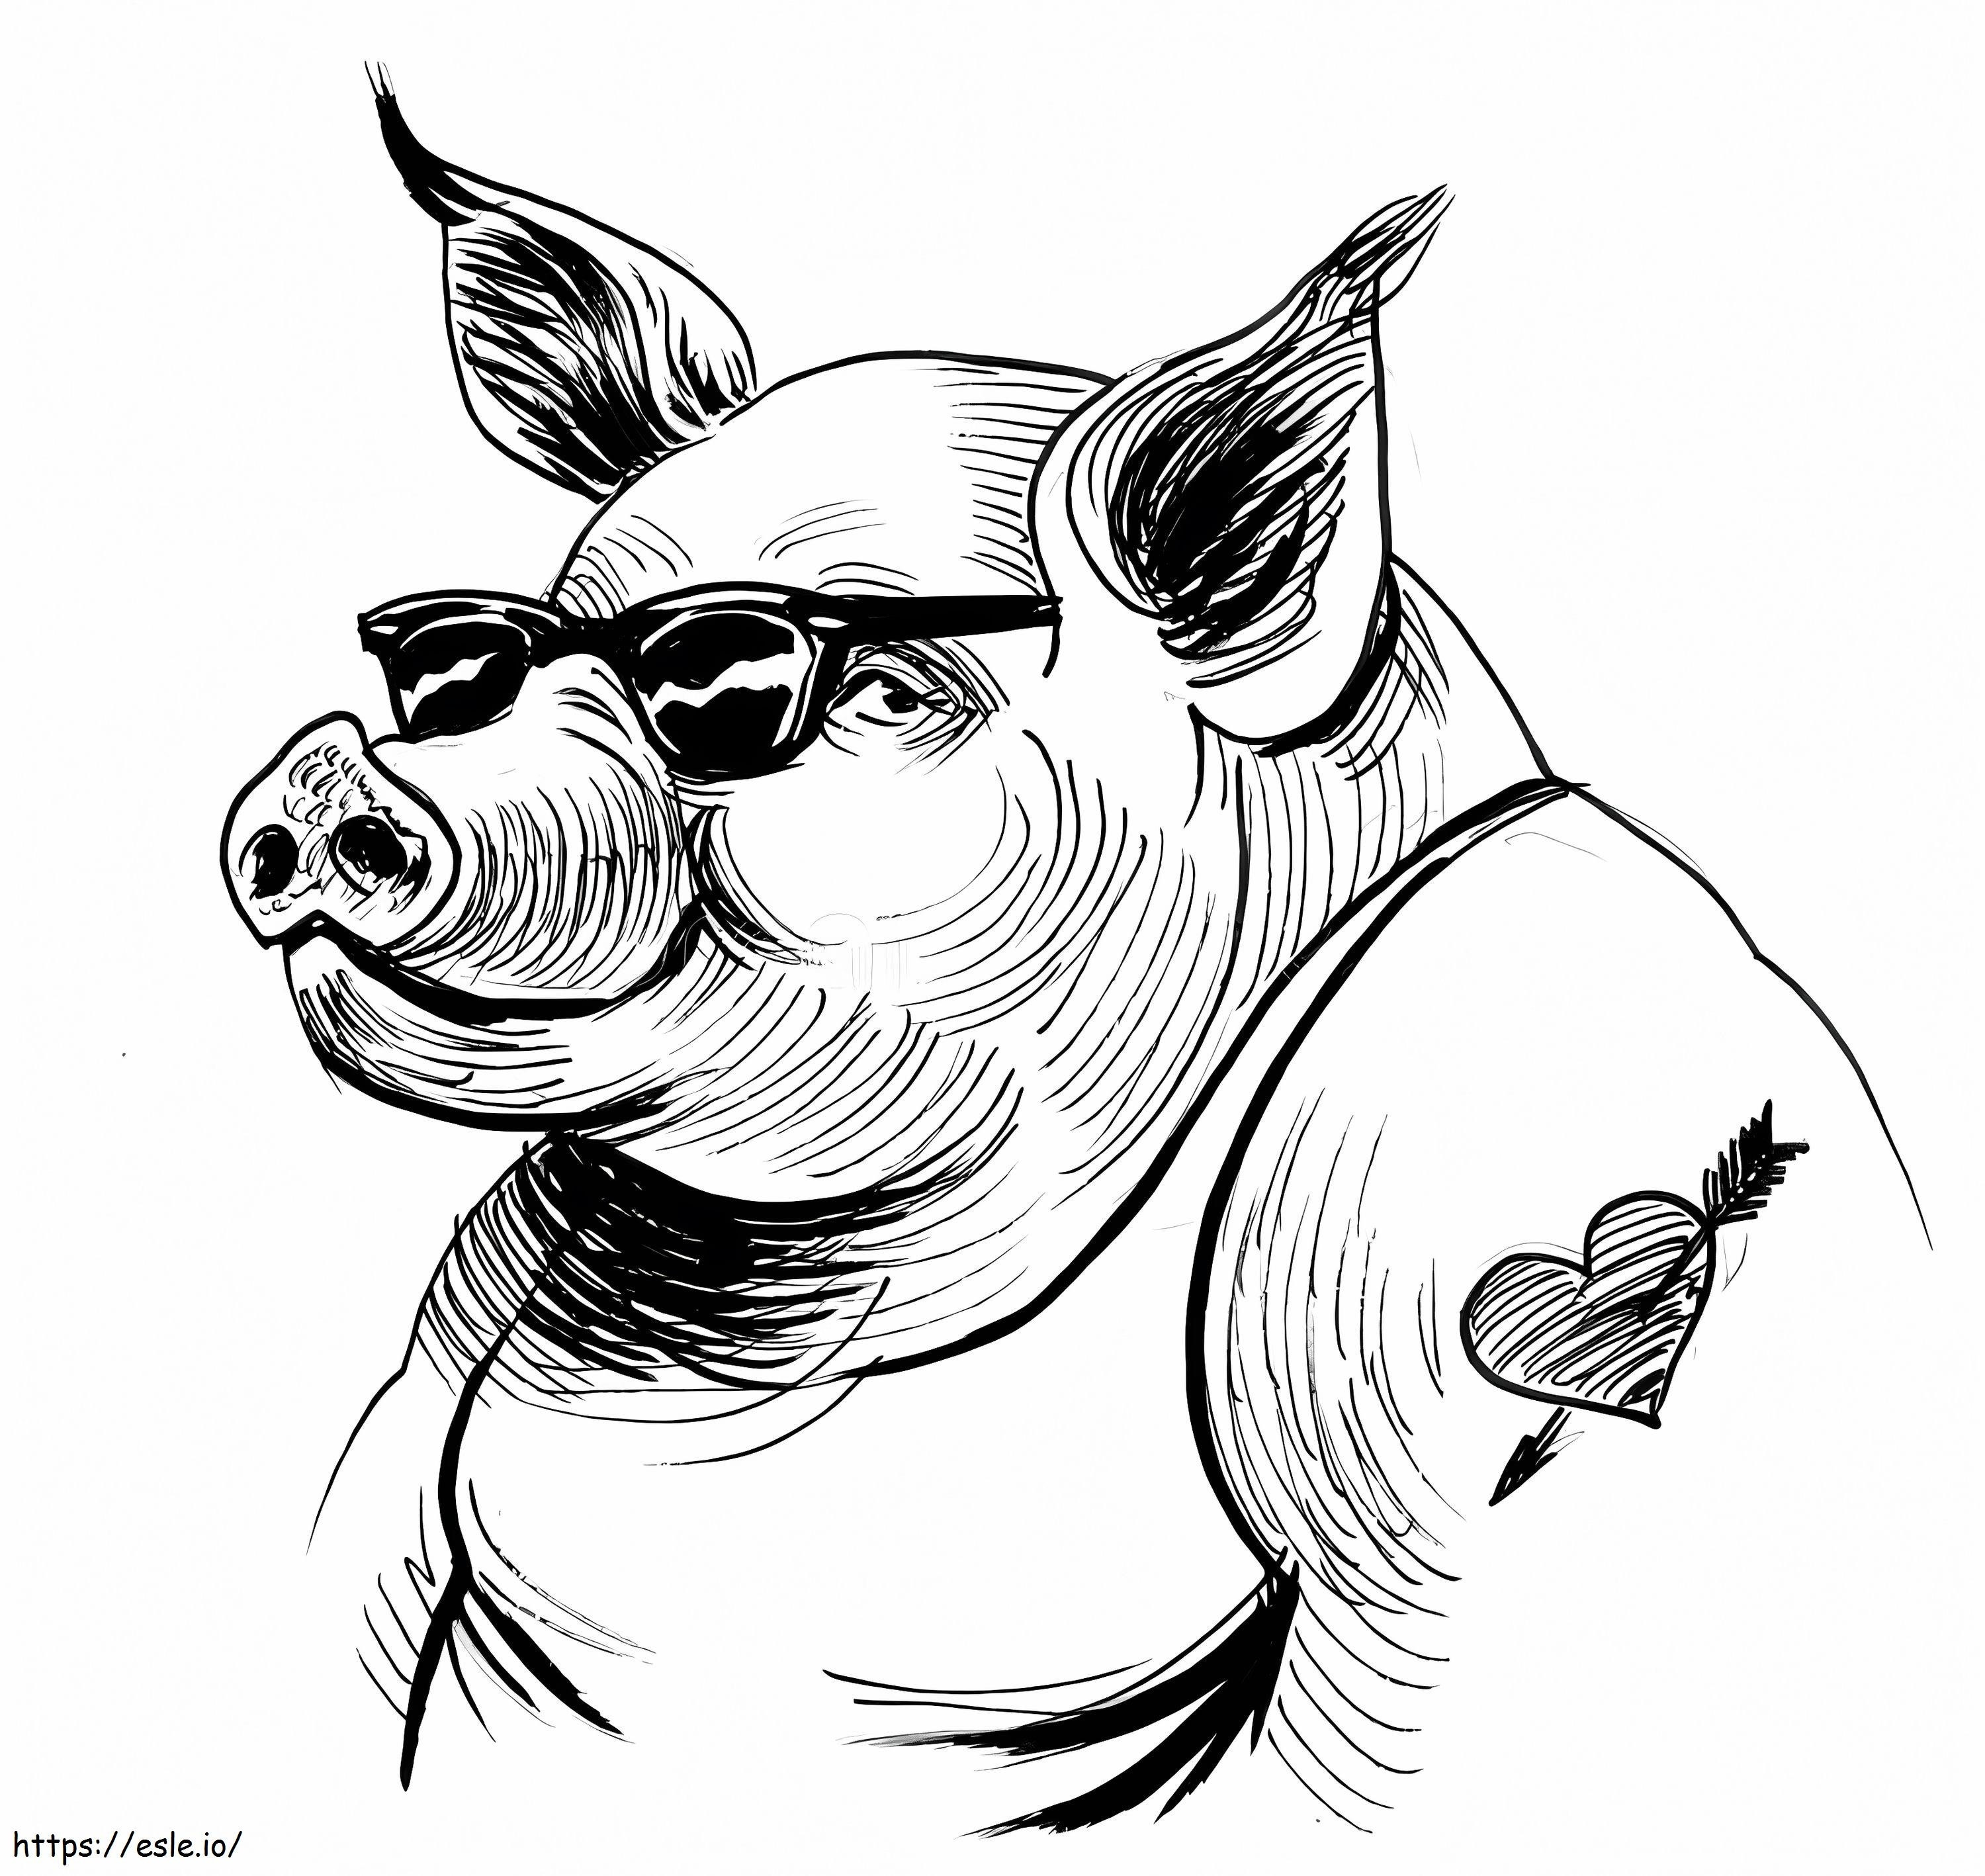 Coole tätowierte Schweinzeichnung ausmalbilder